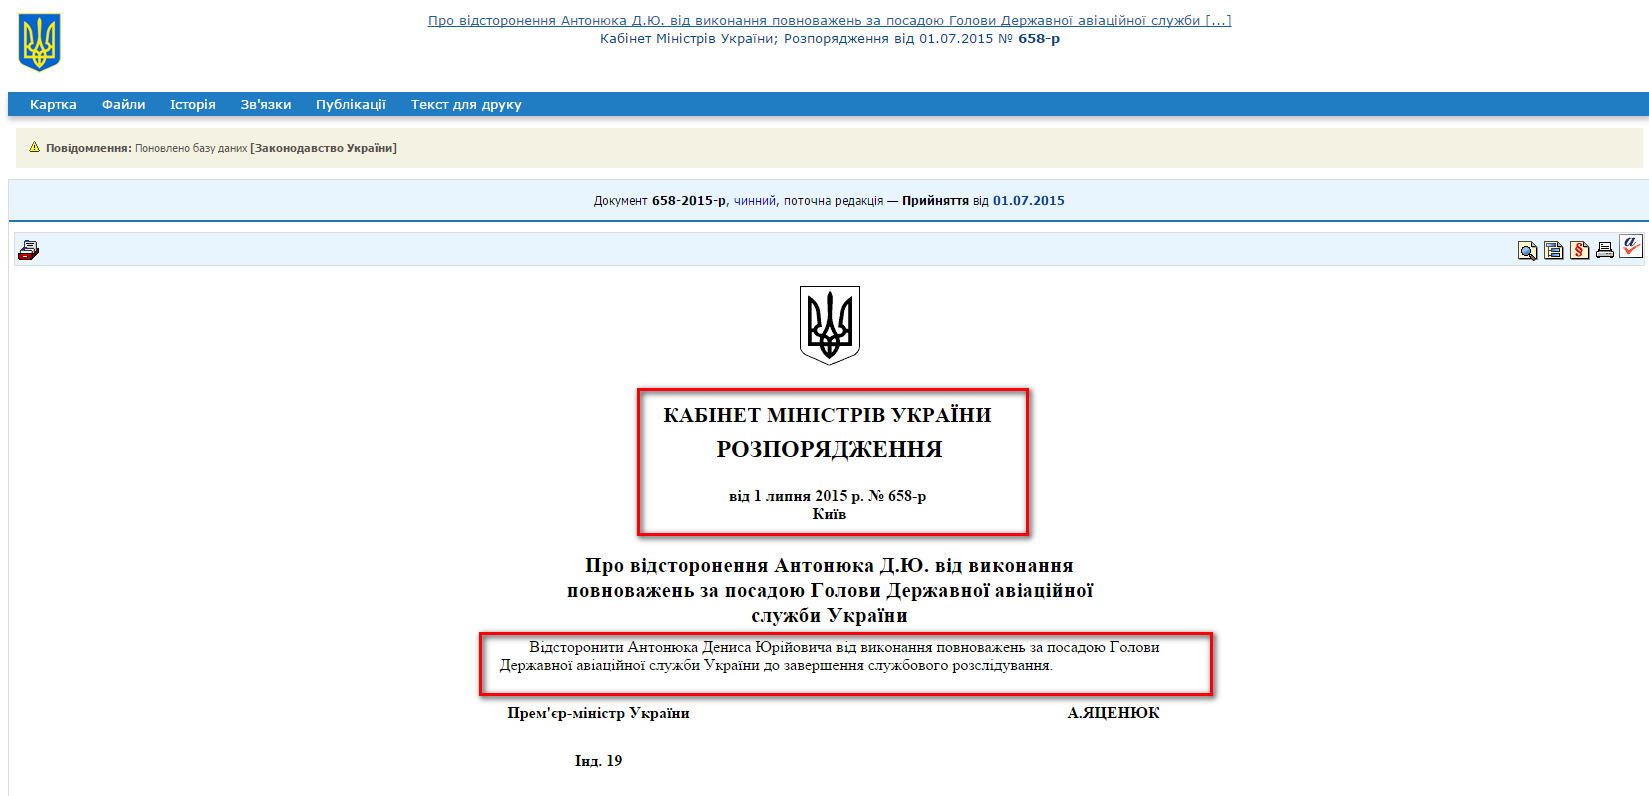 http://zakon2.rada.gov.ua/laws/show/658-2015-%D1%80